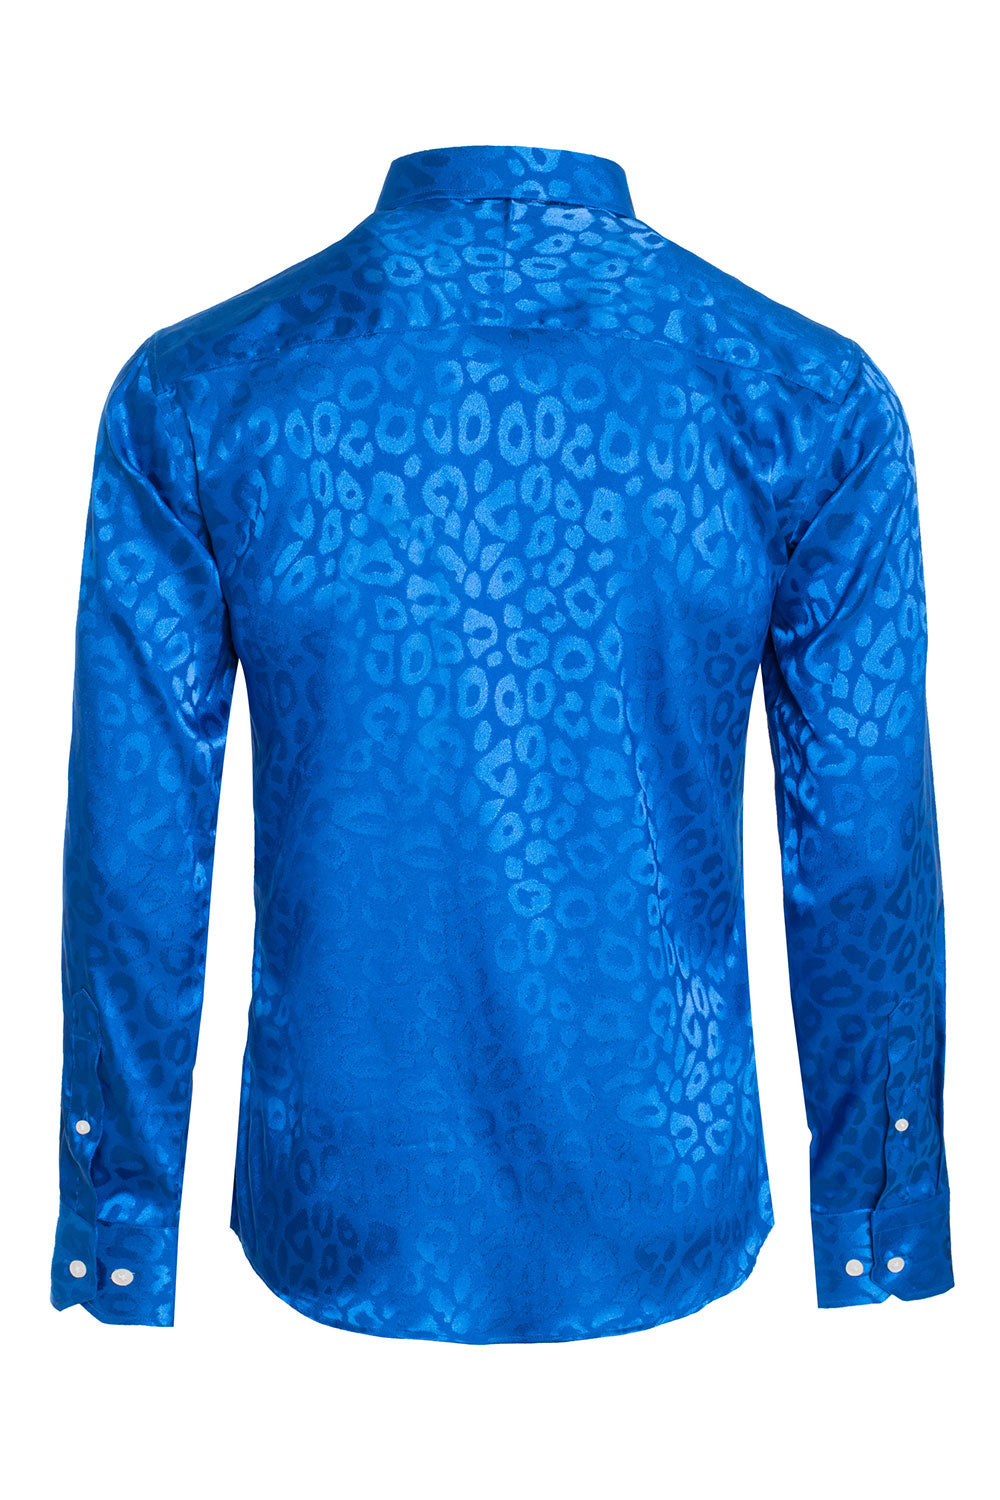 BARABAS Men textured leopard design pattern button down Shirts B310